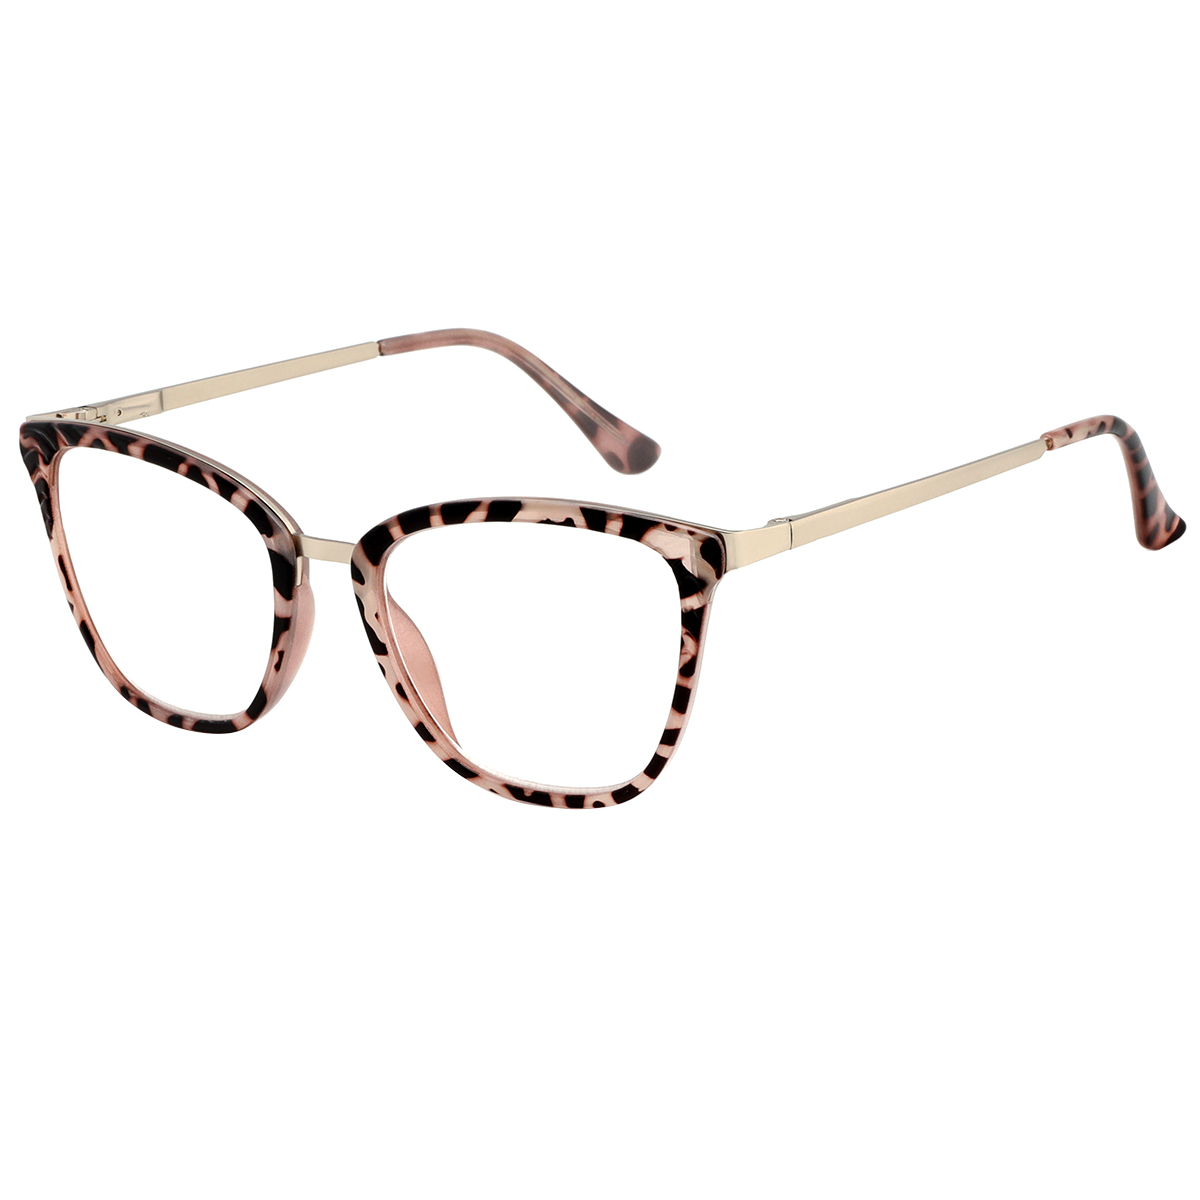 Regina - Cat-eye Demi-pink Reading Glasses for Women